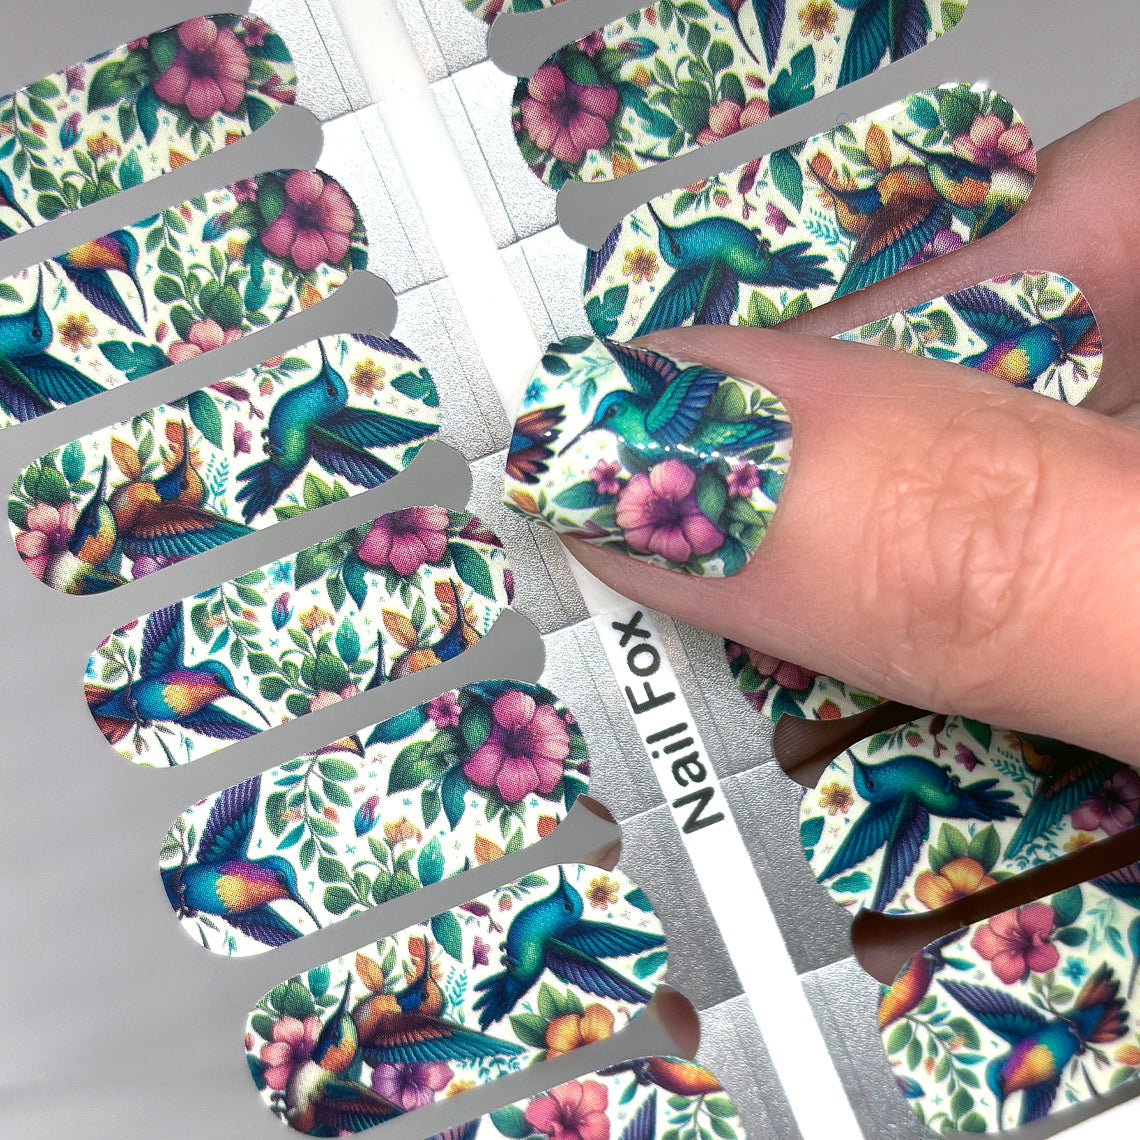 Hummingbird Garden Exclusive Design Nail Wraps